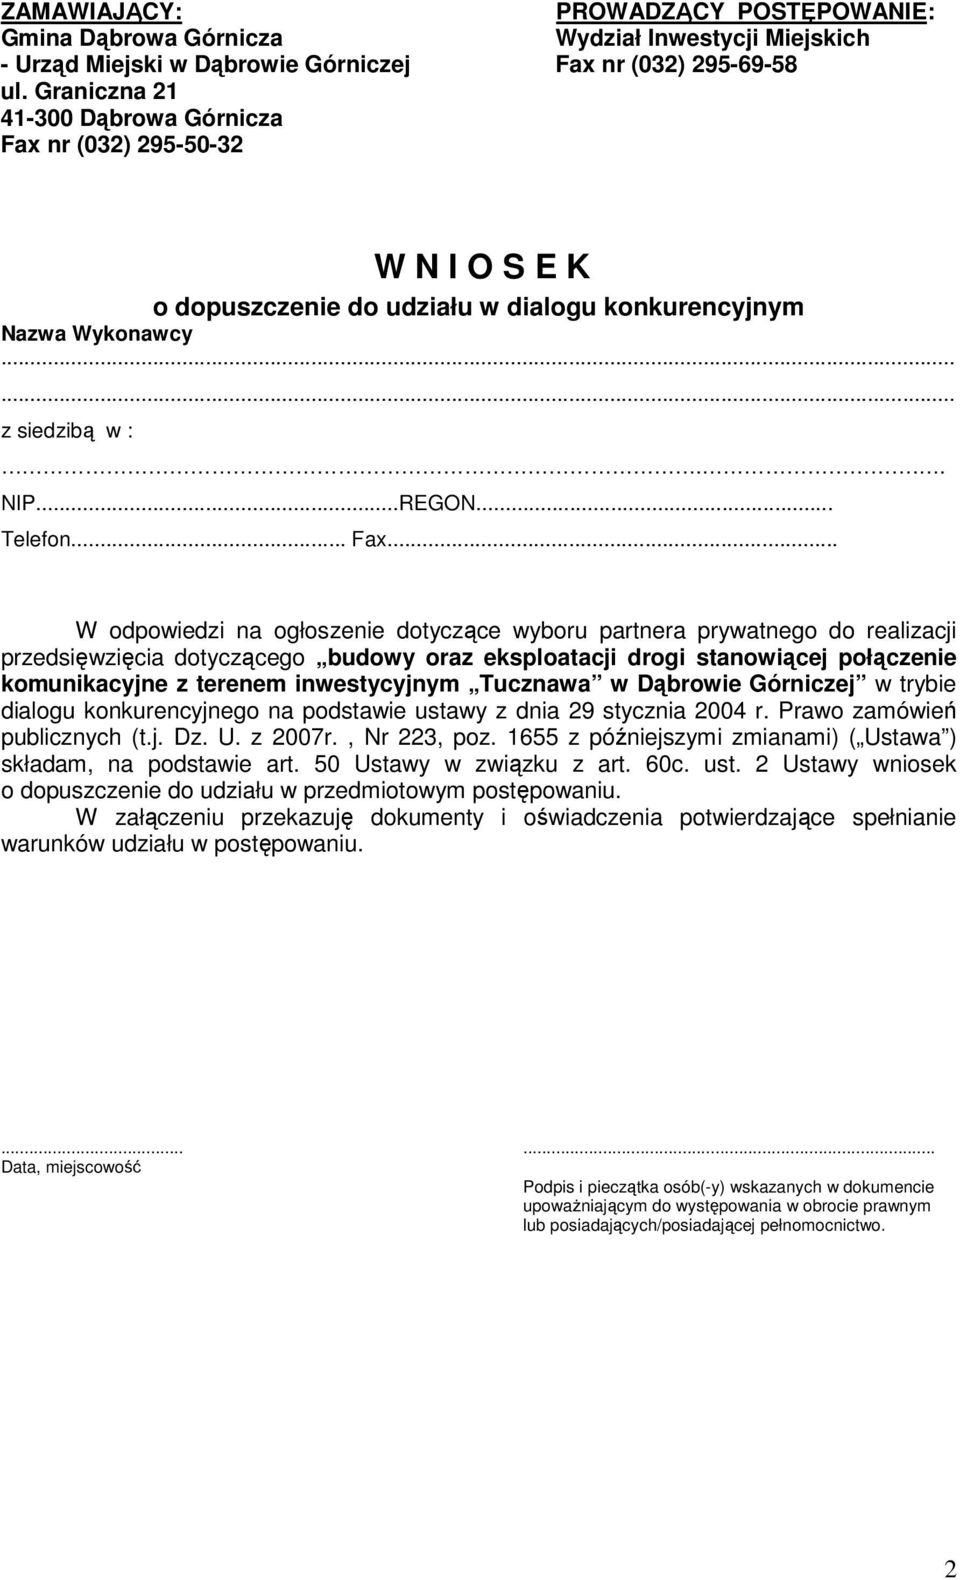 inwestycyjnym Tucznawa w Dąbrowie Górniczej w trybie dialogu konkurencyjnego na podstawie ustawy z dnia 29 stycznia 2004 r. Prawo zamówień publicznych (t.j. Dz. U. z 2007r., Nr 223, poz.